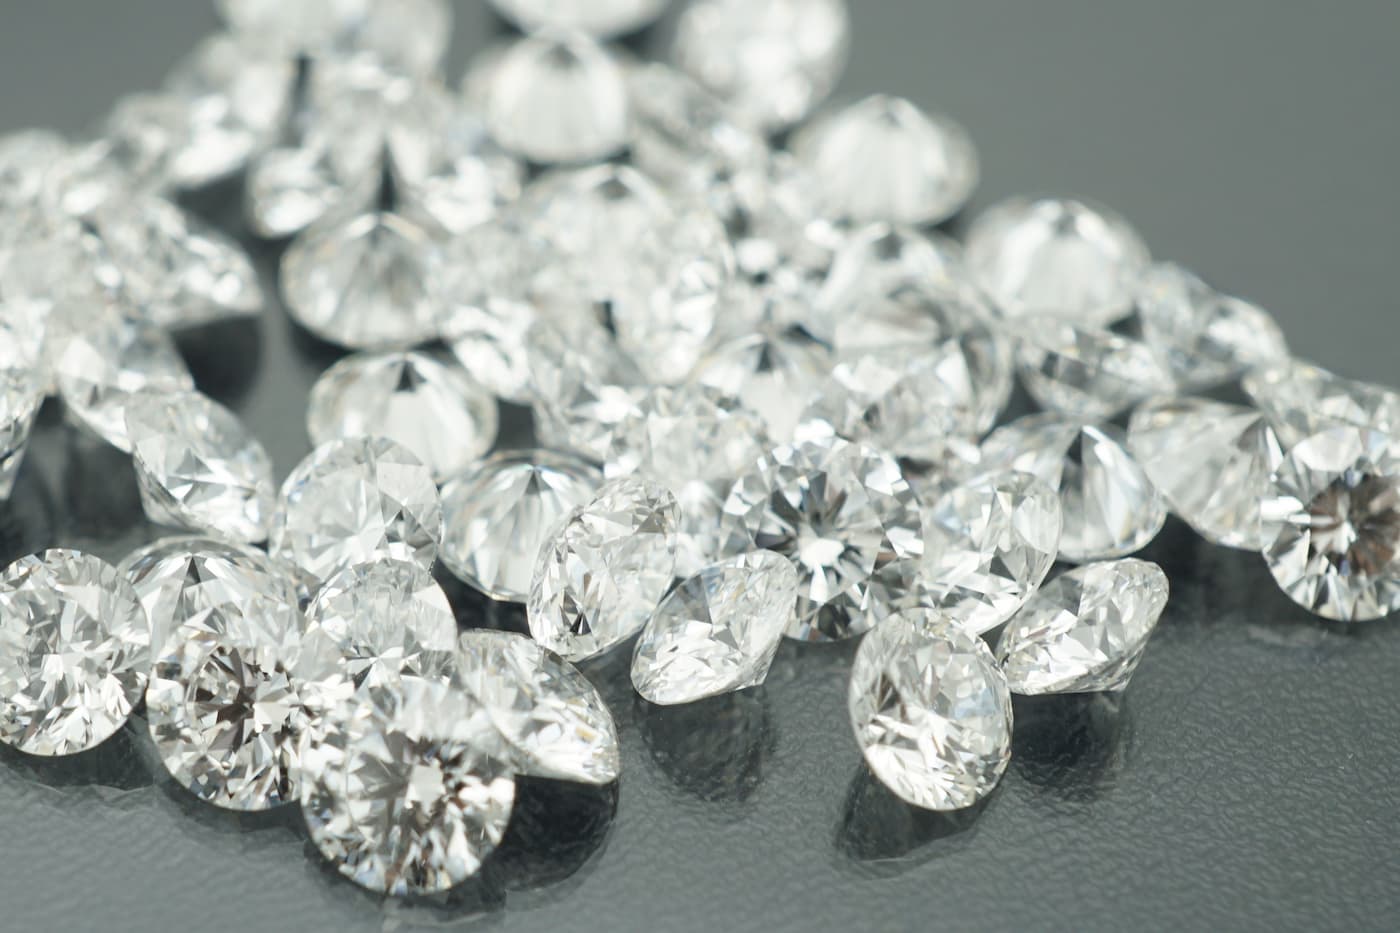 ラボグロウンダイヤモンド専門店『september5』が取り扱っている合成ダイヤモンドのラボグロウンダイヤモンドのルース（裸石）